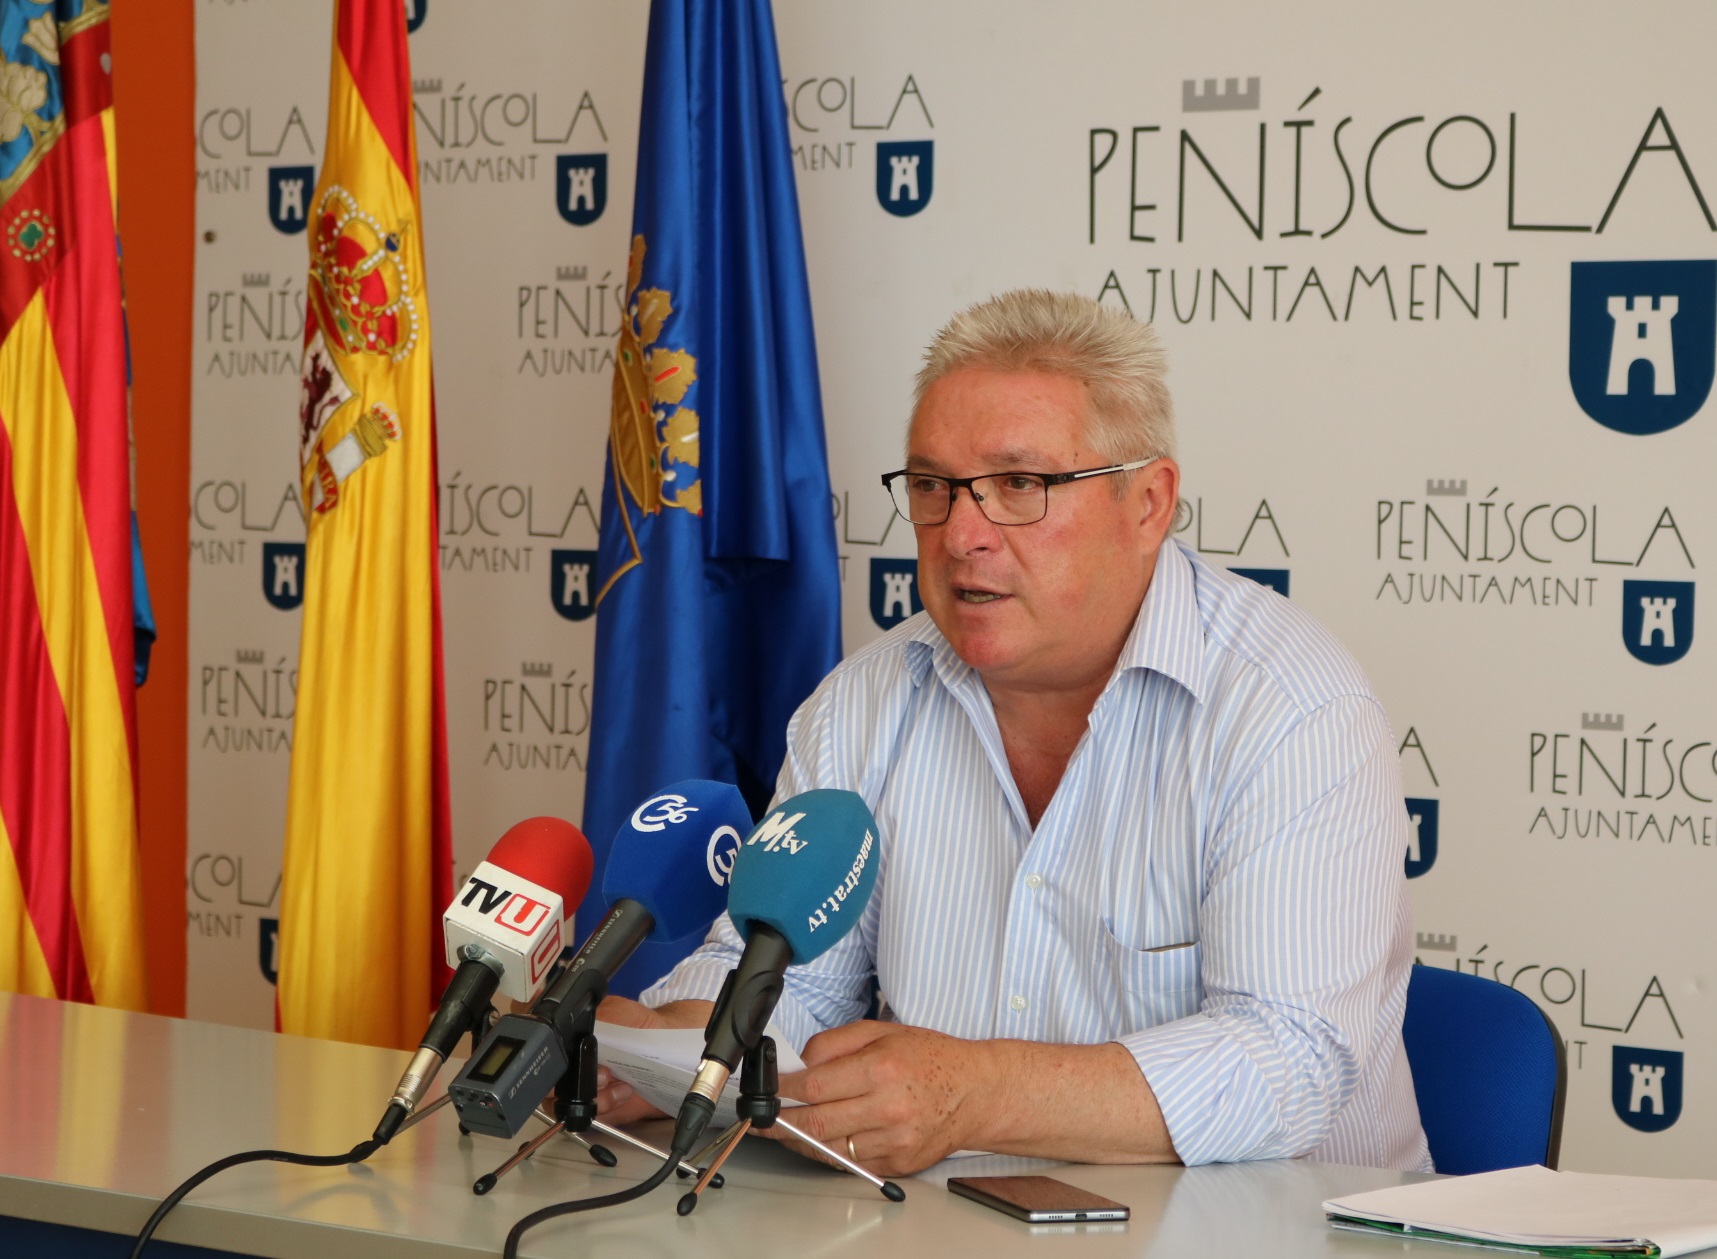 Peníscola, l'Ajuntament considera que la inversió de la Generalitat és insuficient per adequar la carretera CV141